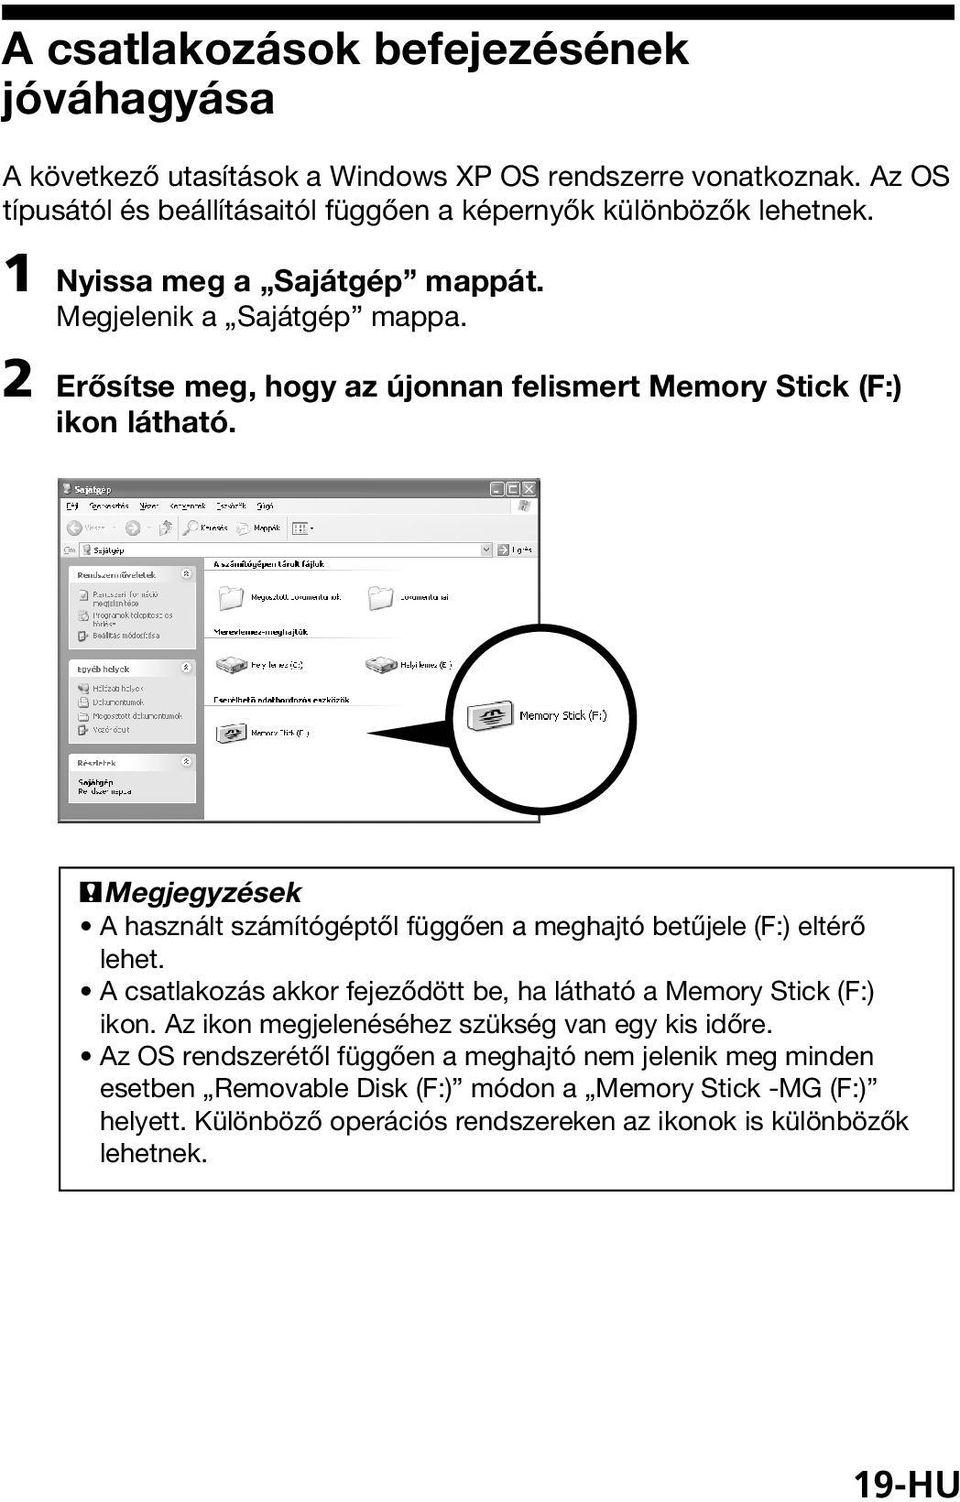 PMegjegyzések A használt számítógéptől függően a meghajtó betűjele (F:) eltérő lehet. A csatlakozás akkor fejeződött be, ha látható a Memory Stick (F:) ikon.